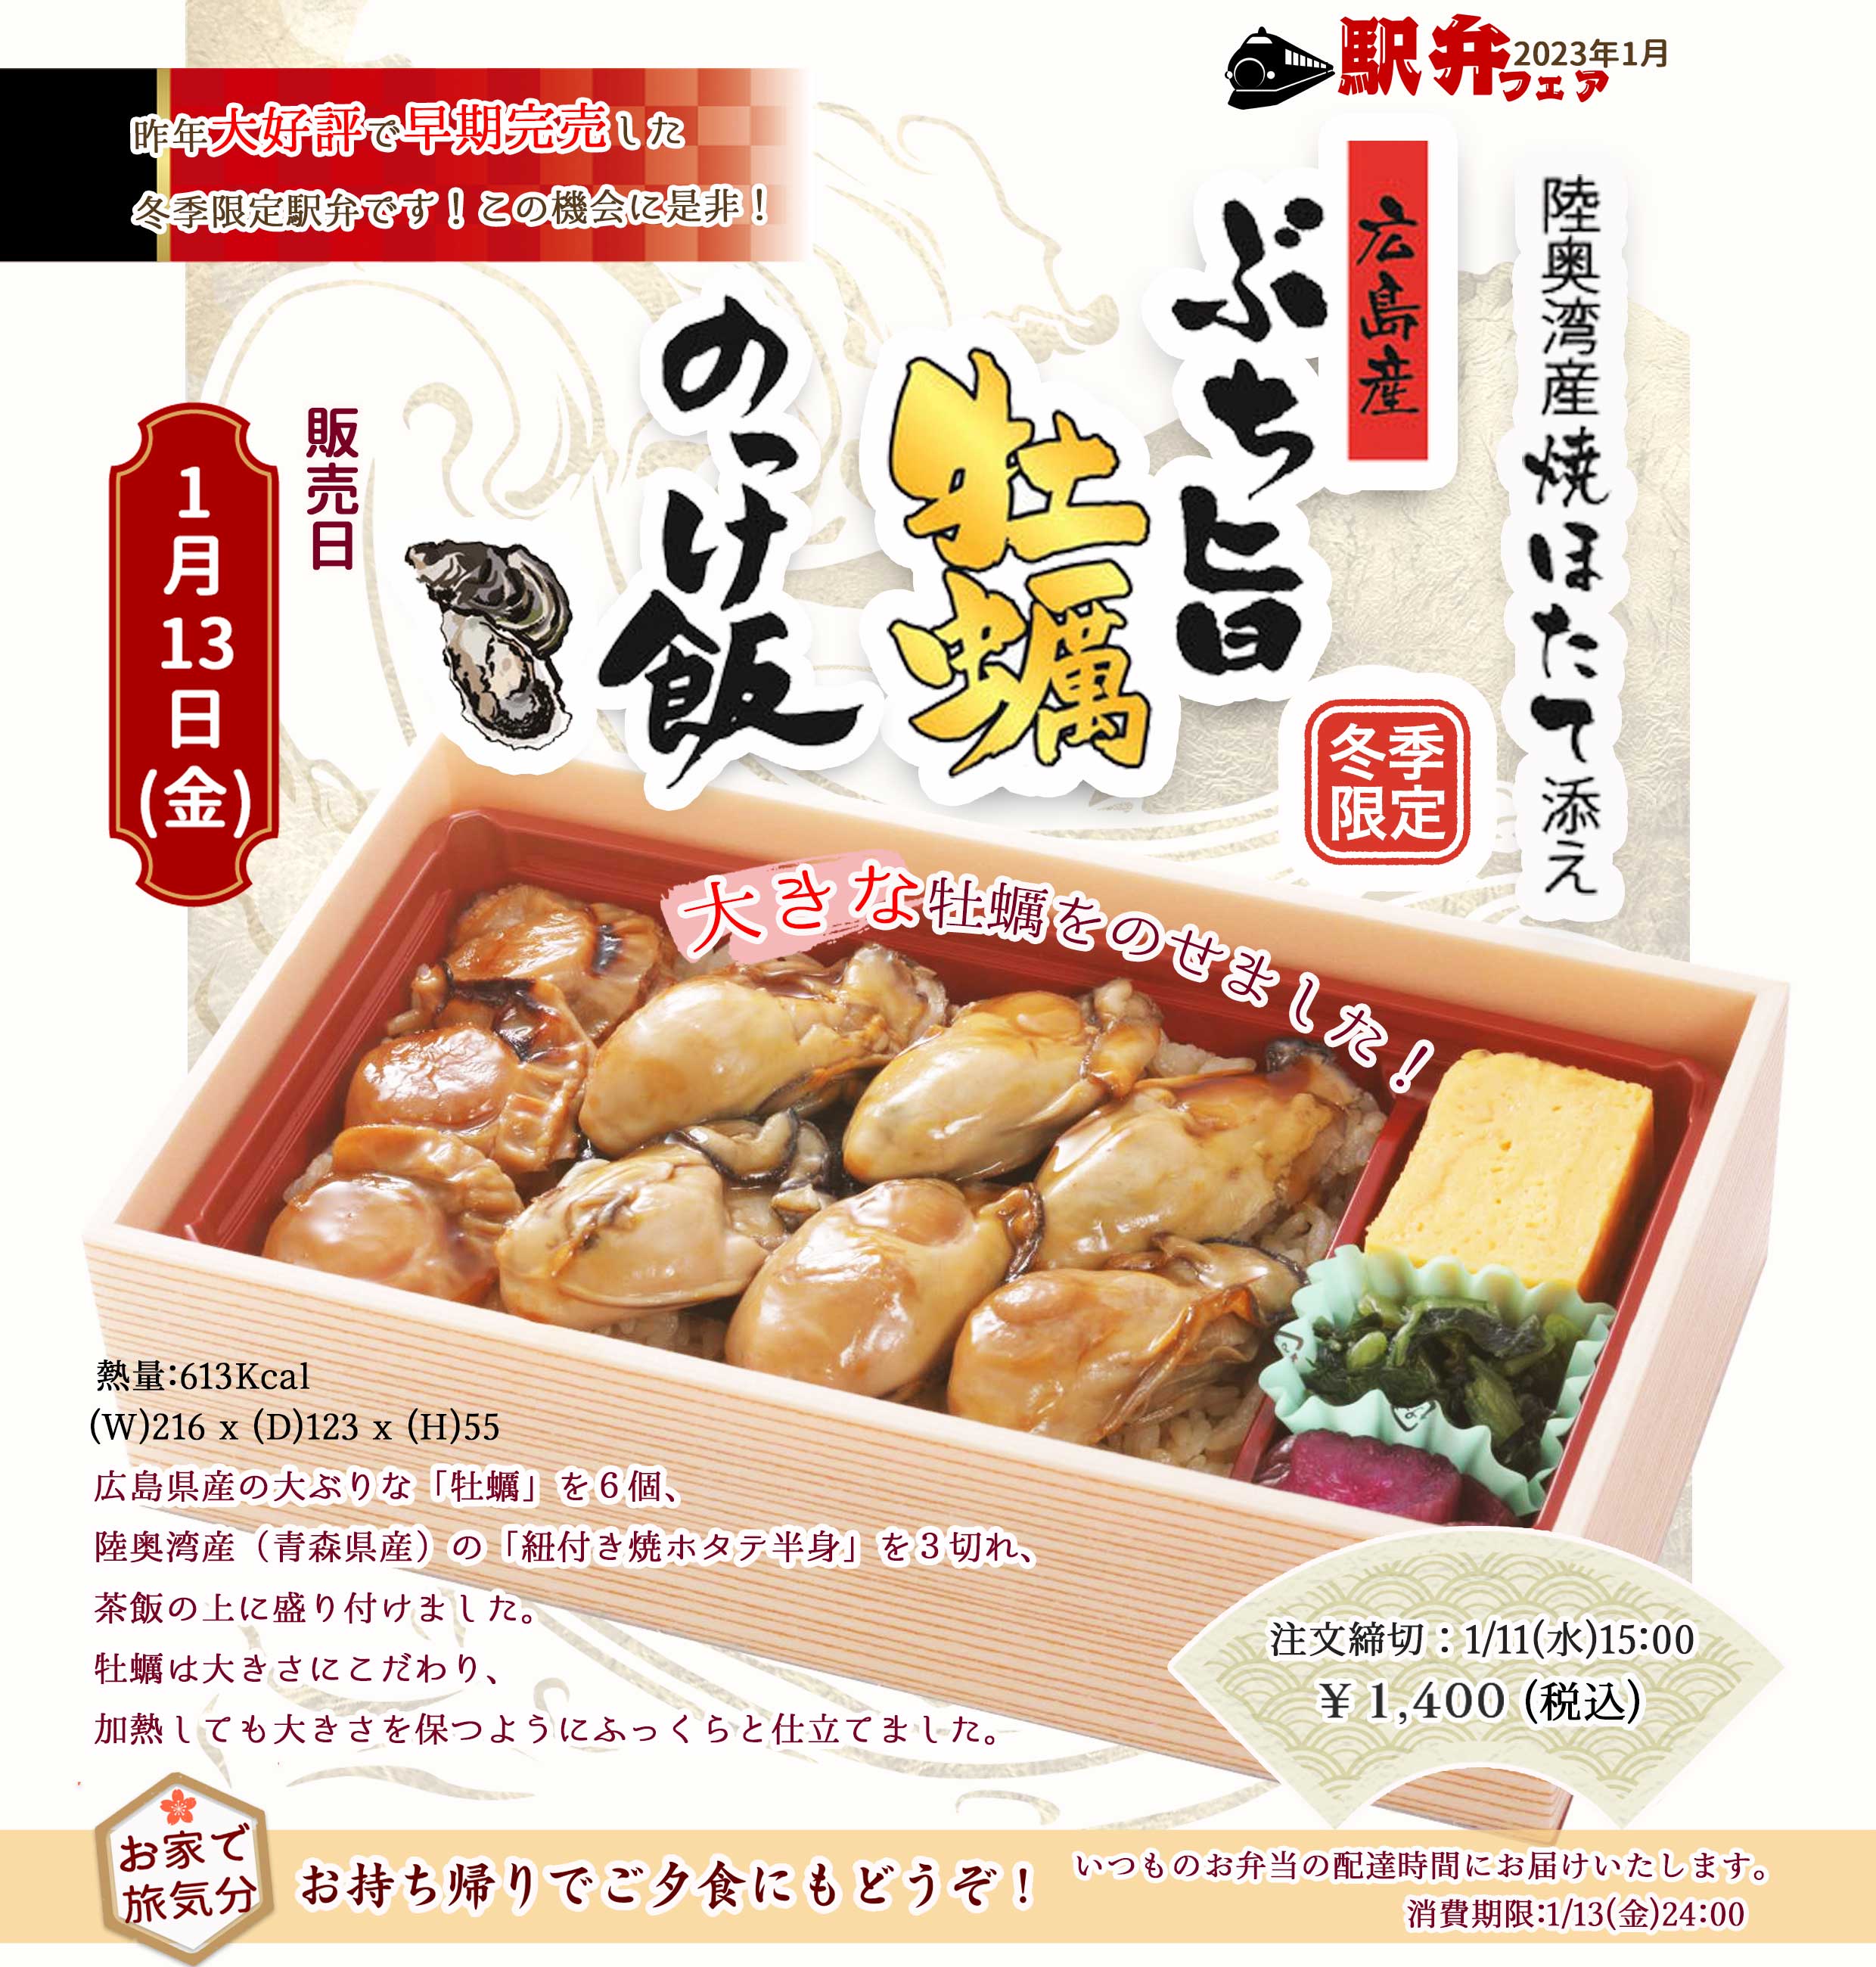 2023年1月13日(金)駅弁「広島産ぶち旨牡蠣のっけ飯」を販売します